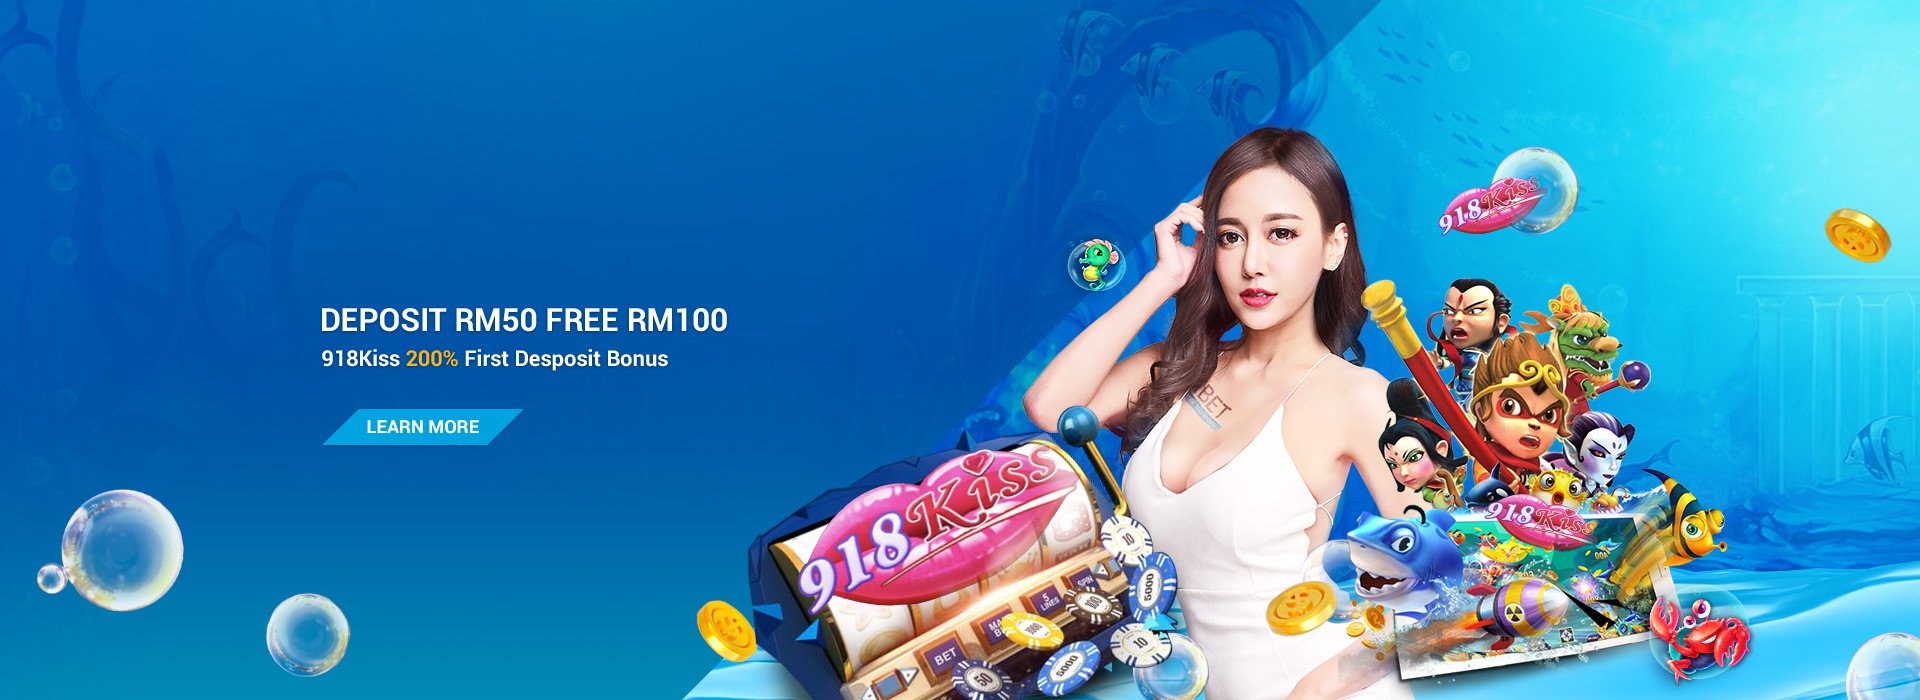 iBET Online Casino Slot Promotion-918Kiss,Mega888,Joker123 200% First Deposit Bonus